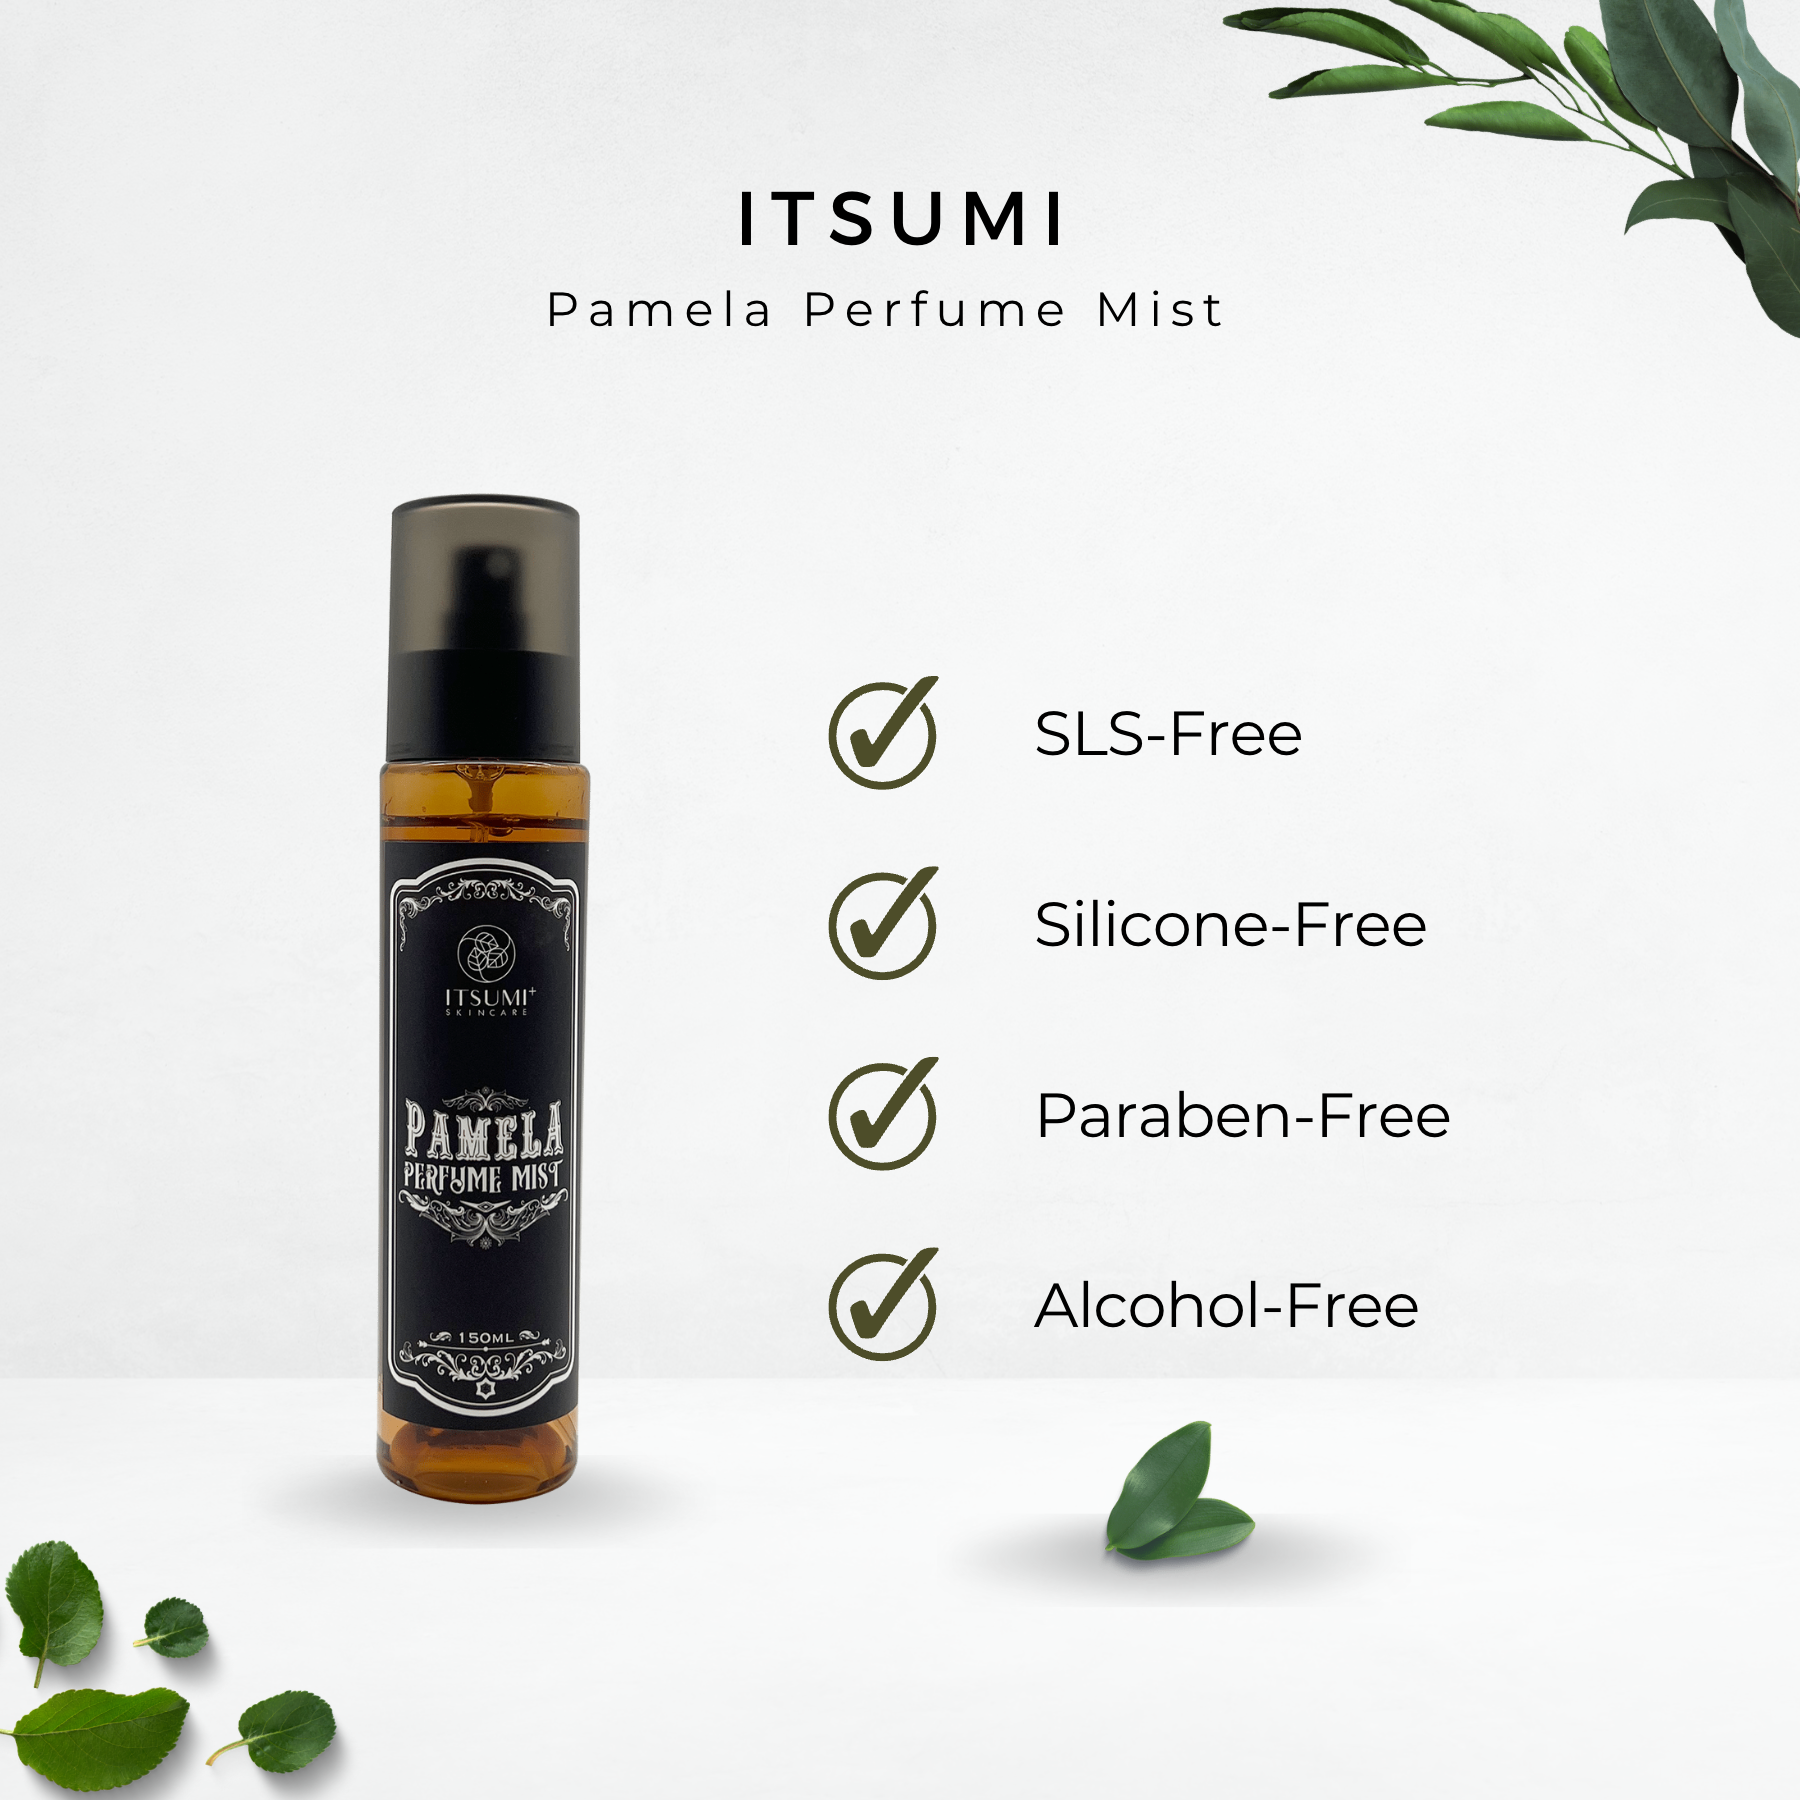 Itsumi+ Pamela Perfume Mist 150ml